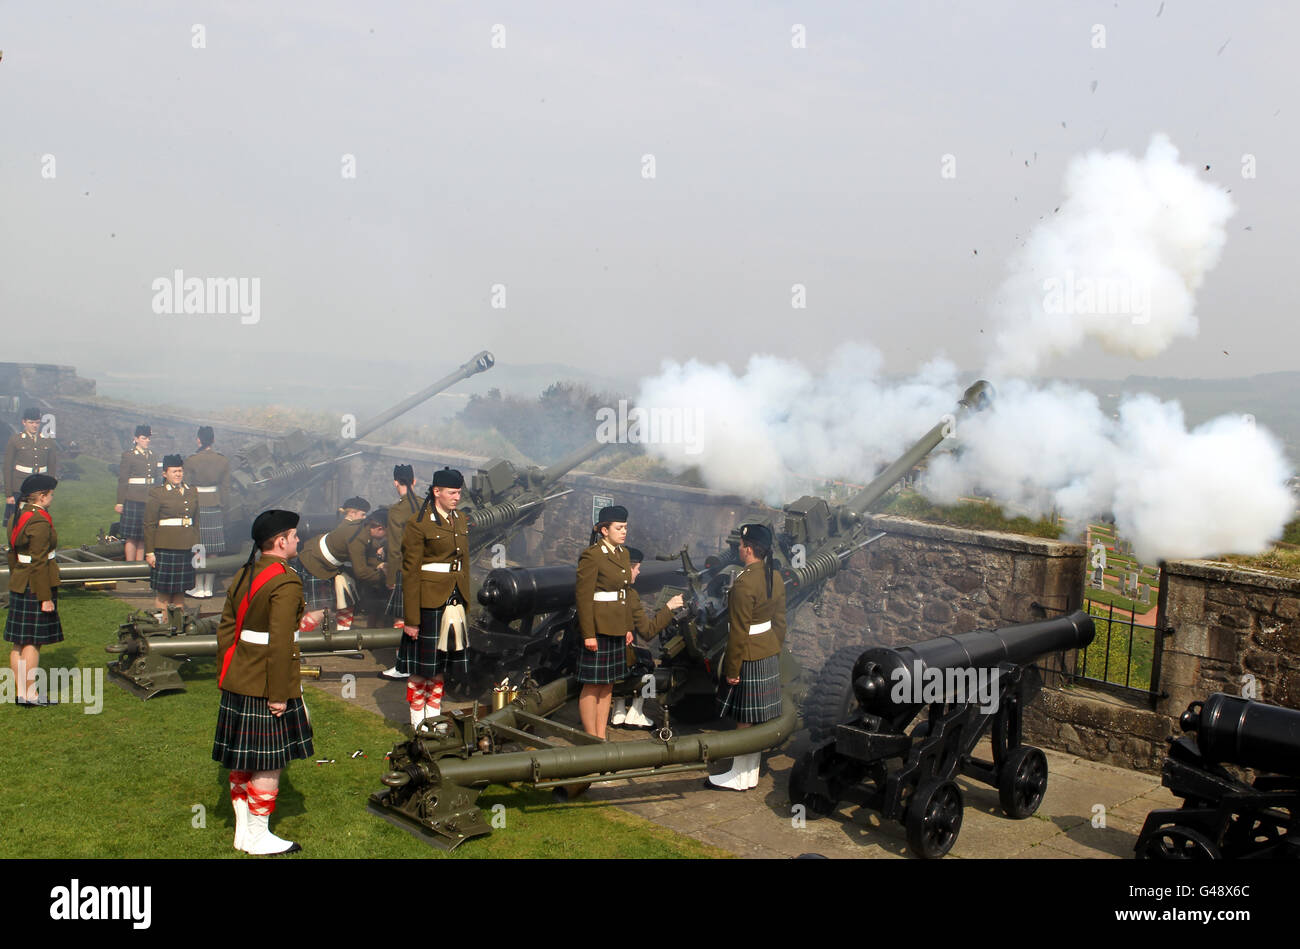 Cadets officiers des universités Glasgow et Strathclyde corps d'instruction des officiers et Gunners de 212 batterie, 105 Régiment Royal Artillery (bénévoles) feu un hommage de 21 armes pour souligner le 85e anniversaire de la reine au château de Stirling. Banque D'Images